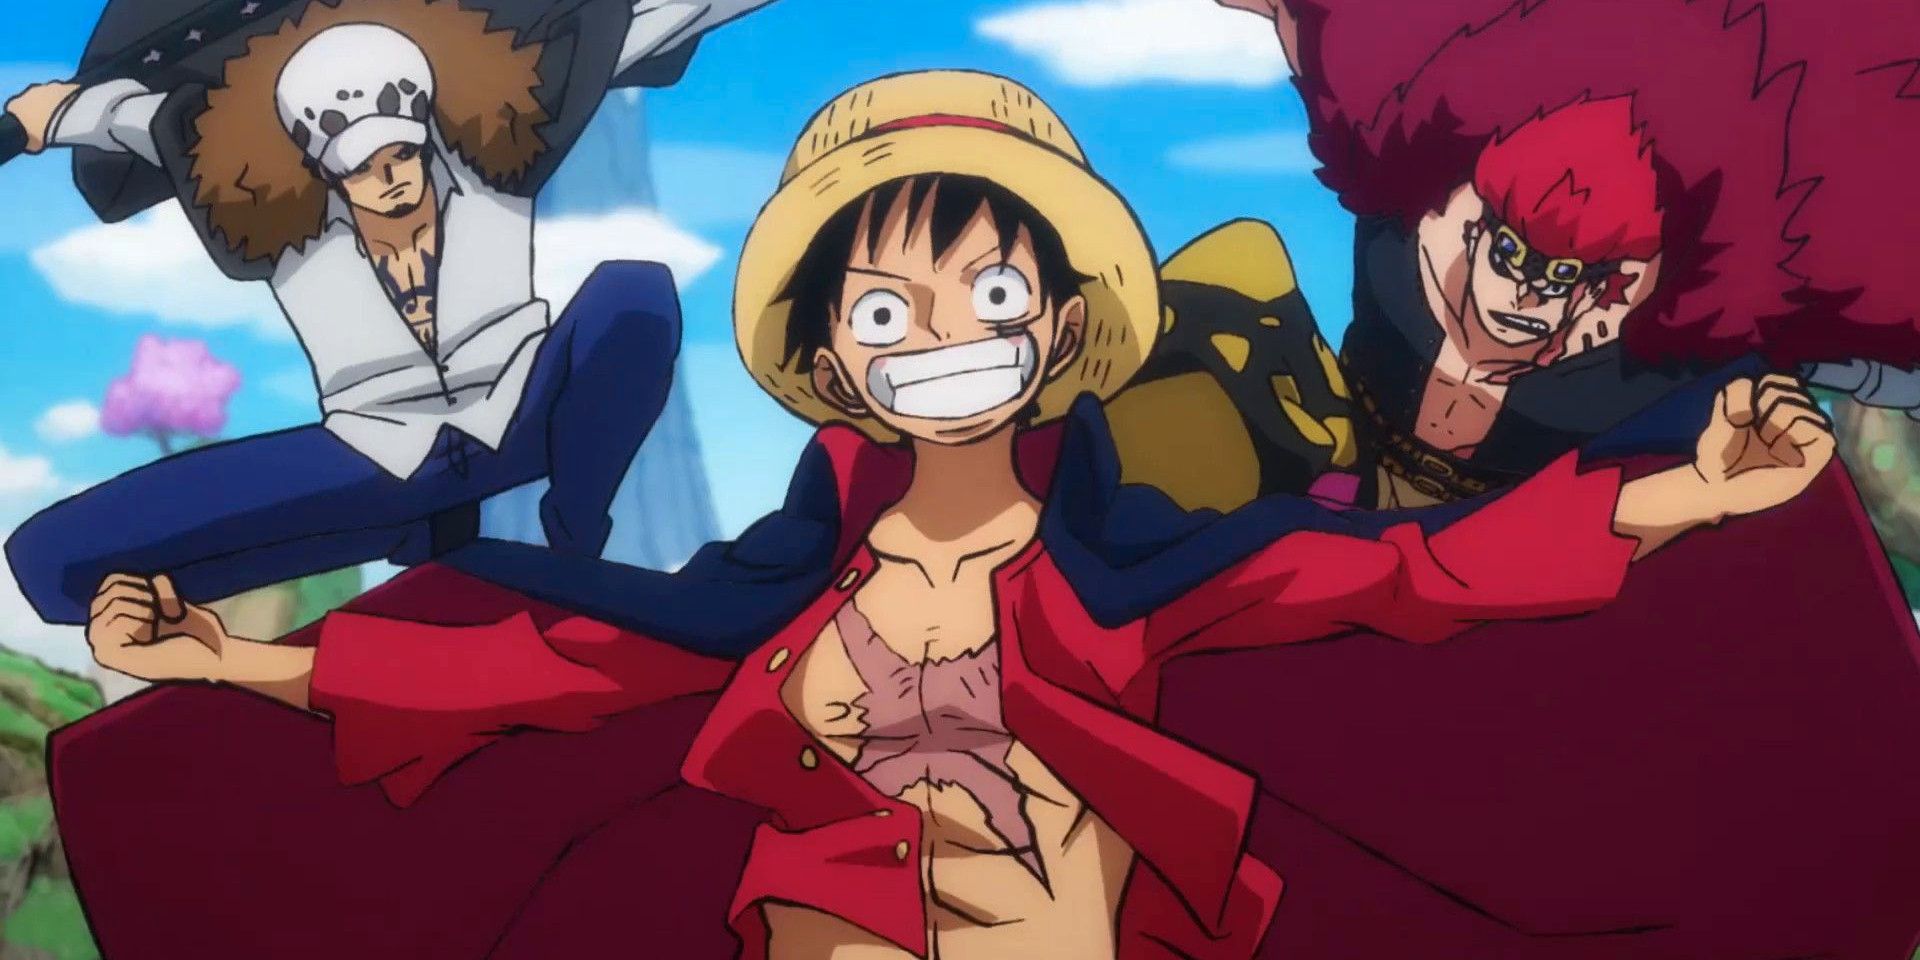 El manga Monsters, del creador de One Piece, se adaptará a un cómic con voz